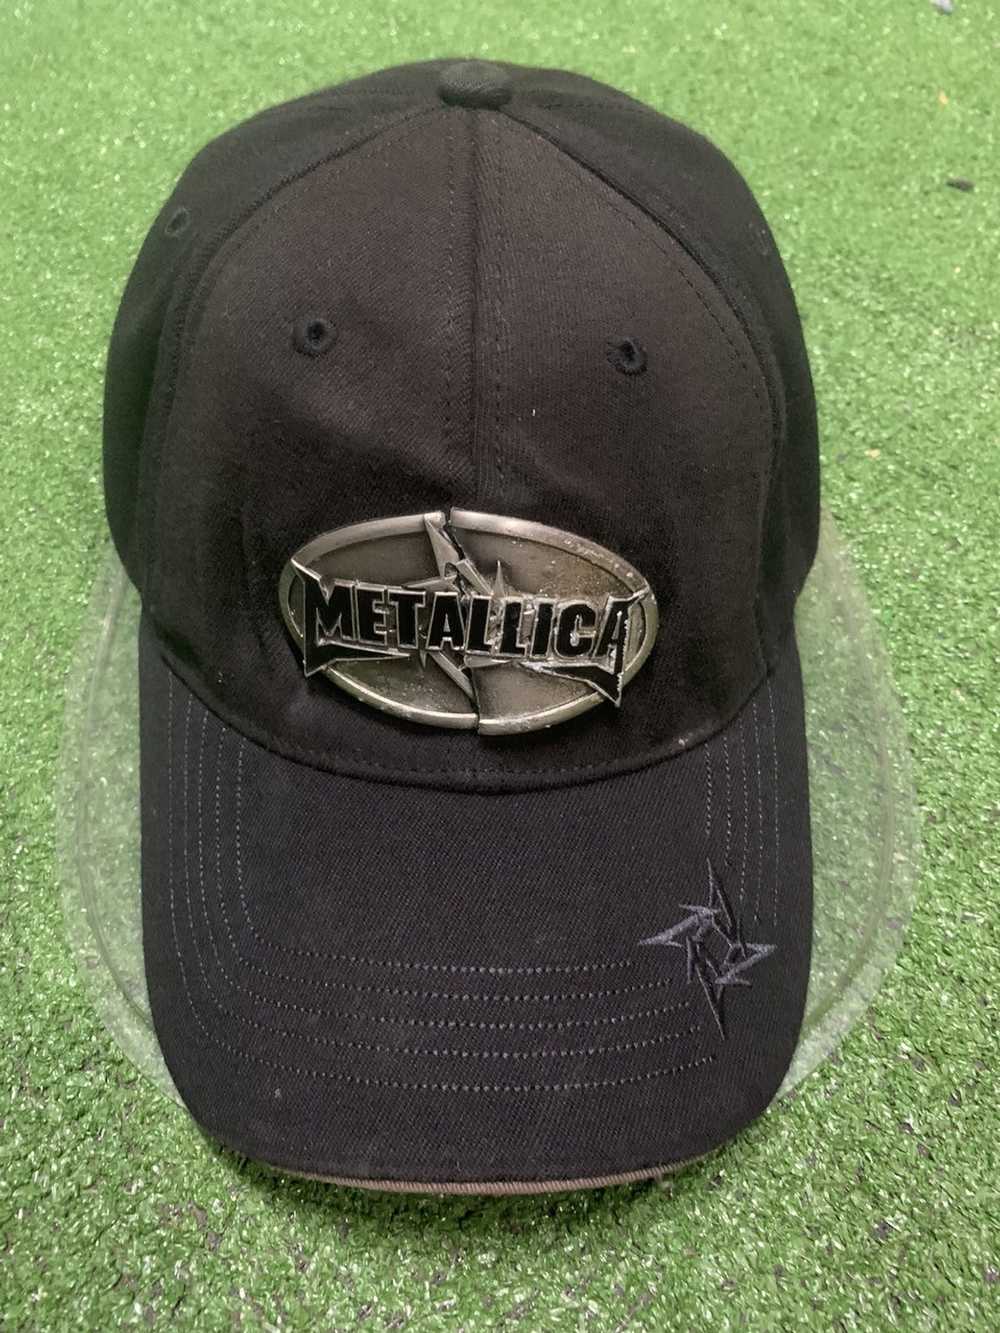 Metallica Metallica Buckle hat - image 2